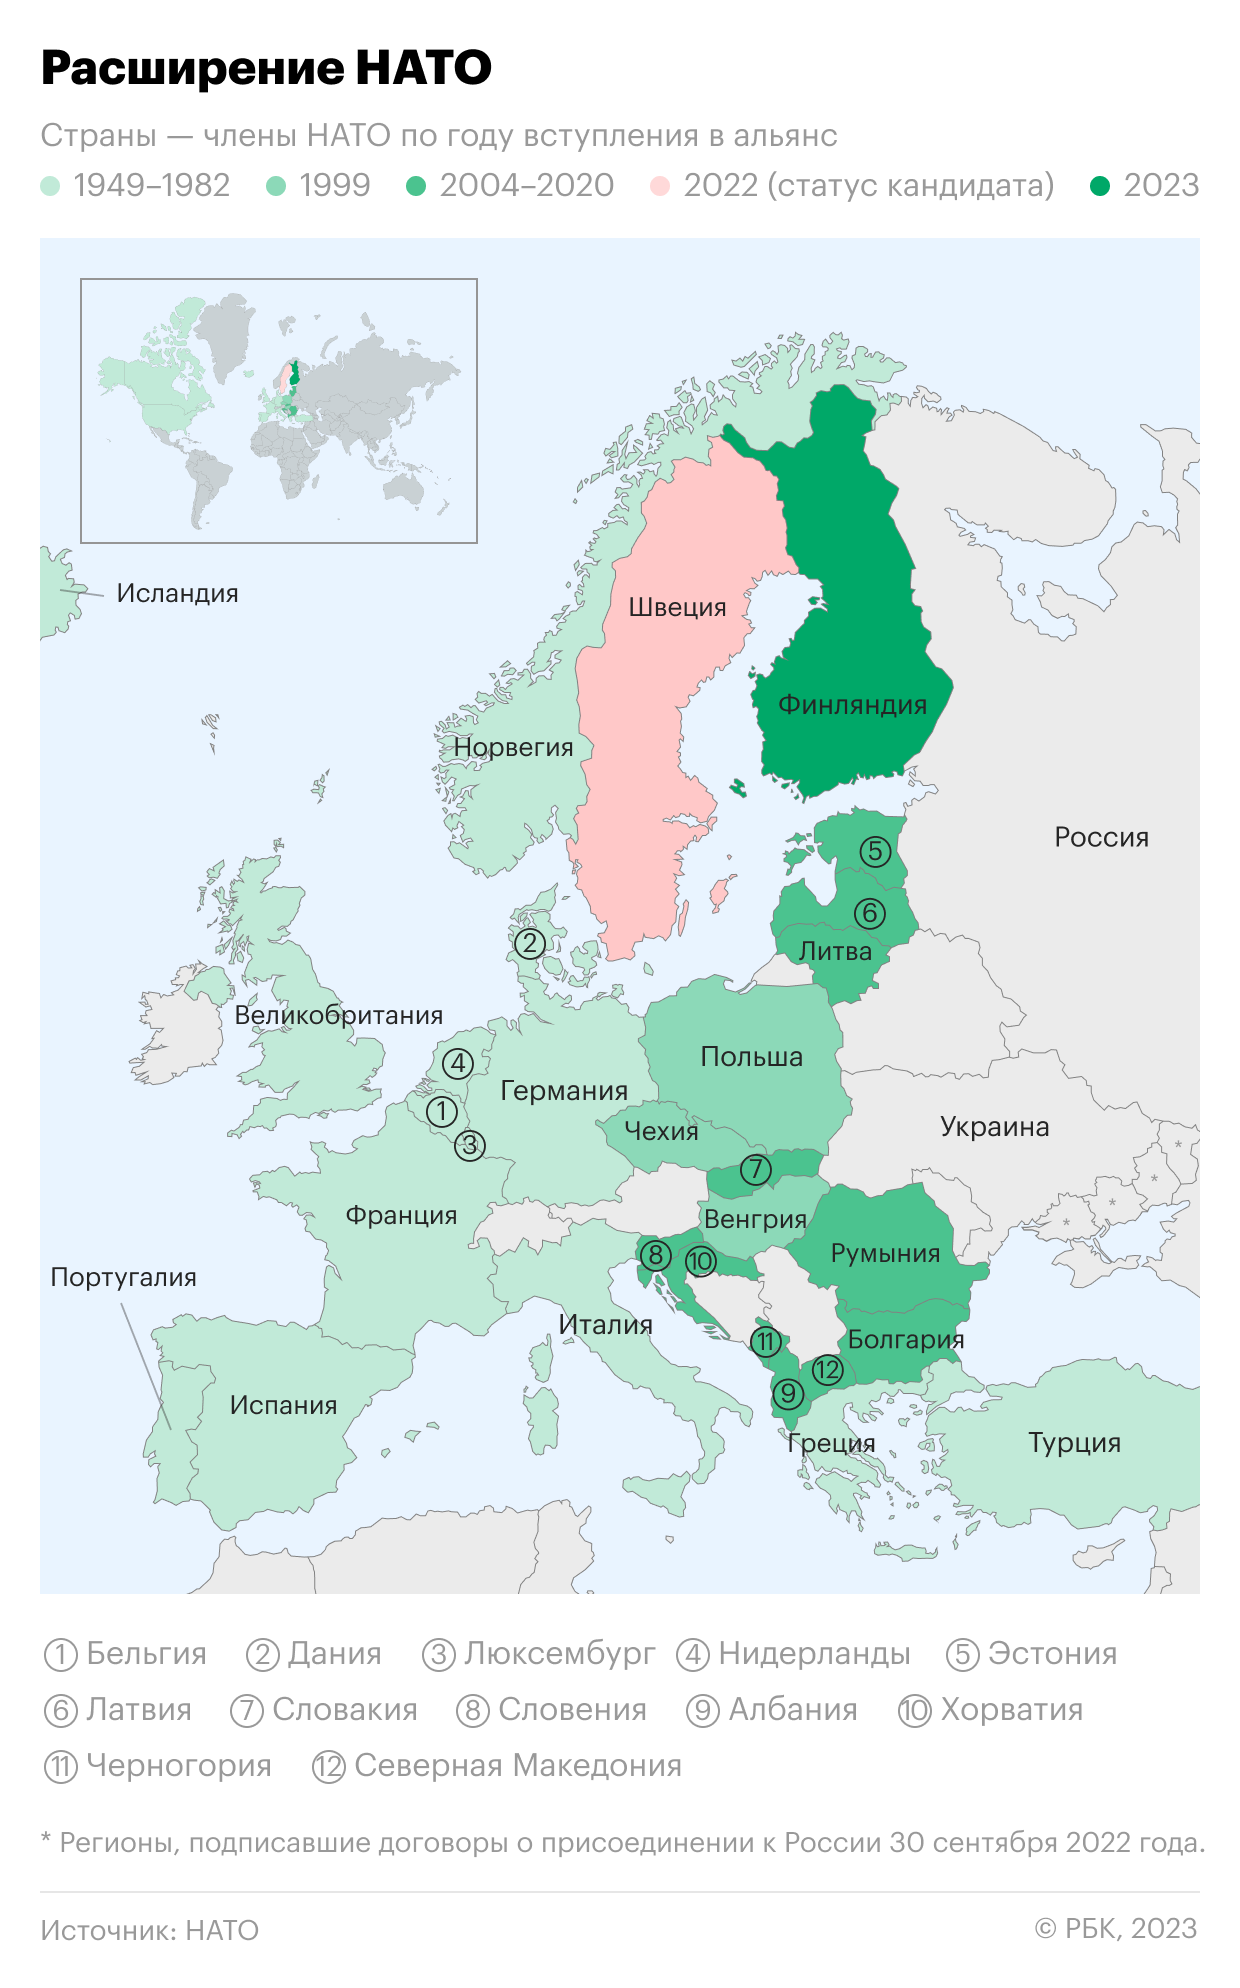 В Венгрии не смогли проголосовать по членству Швеции в НАТО из-за бойкота"/>













